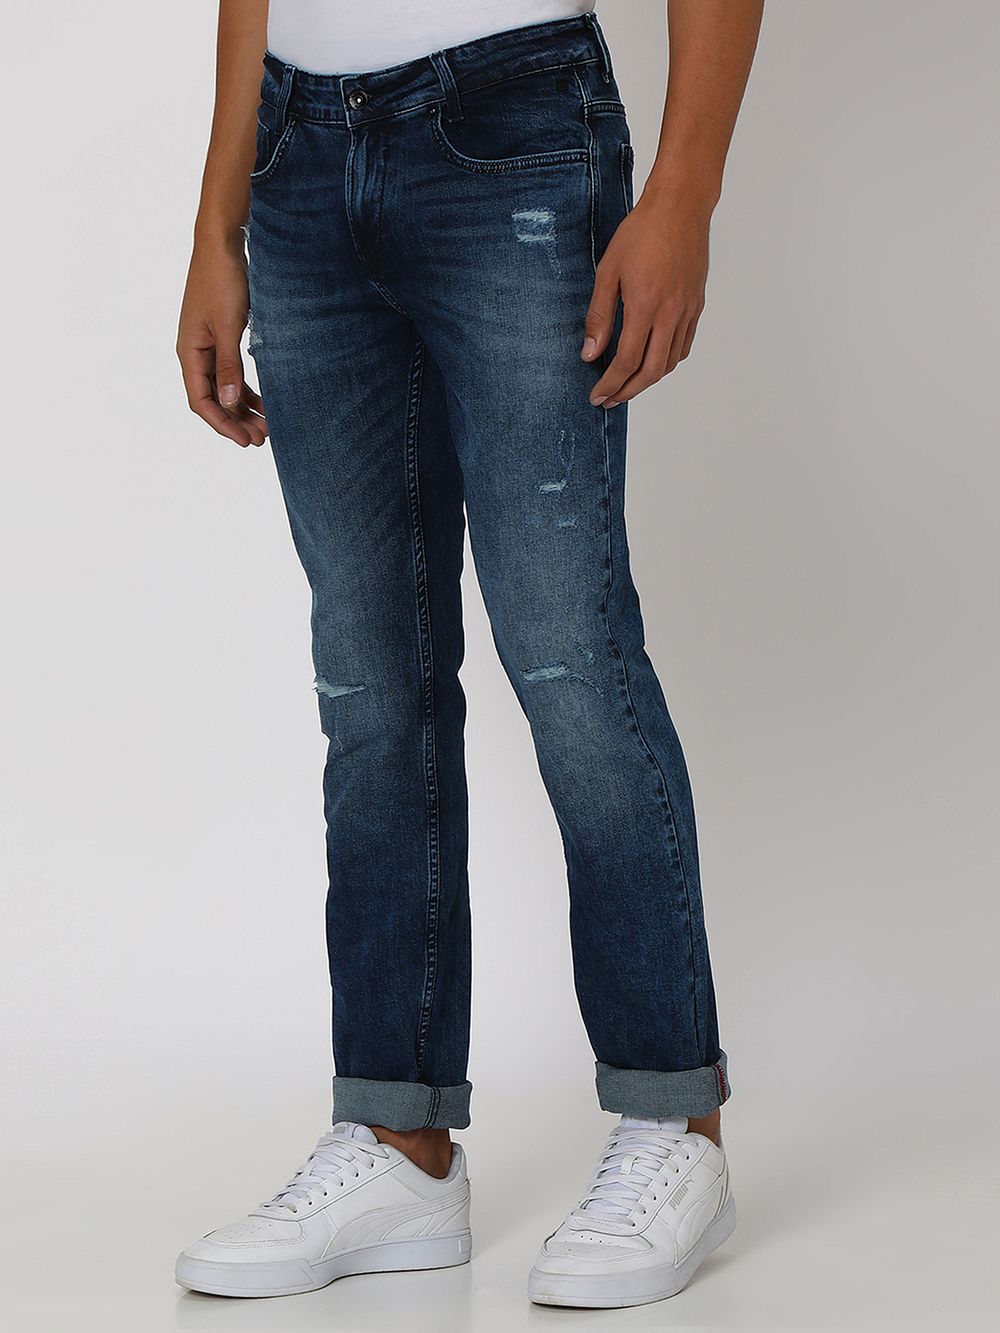 Indigo Blue Super Slim Fit Distressed Stretch Jeans